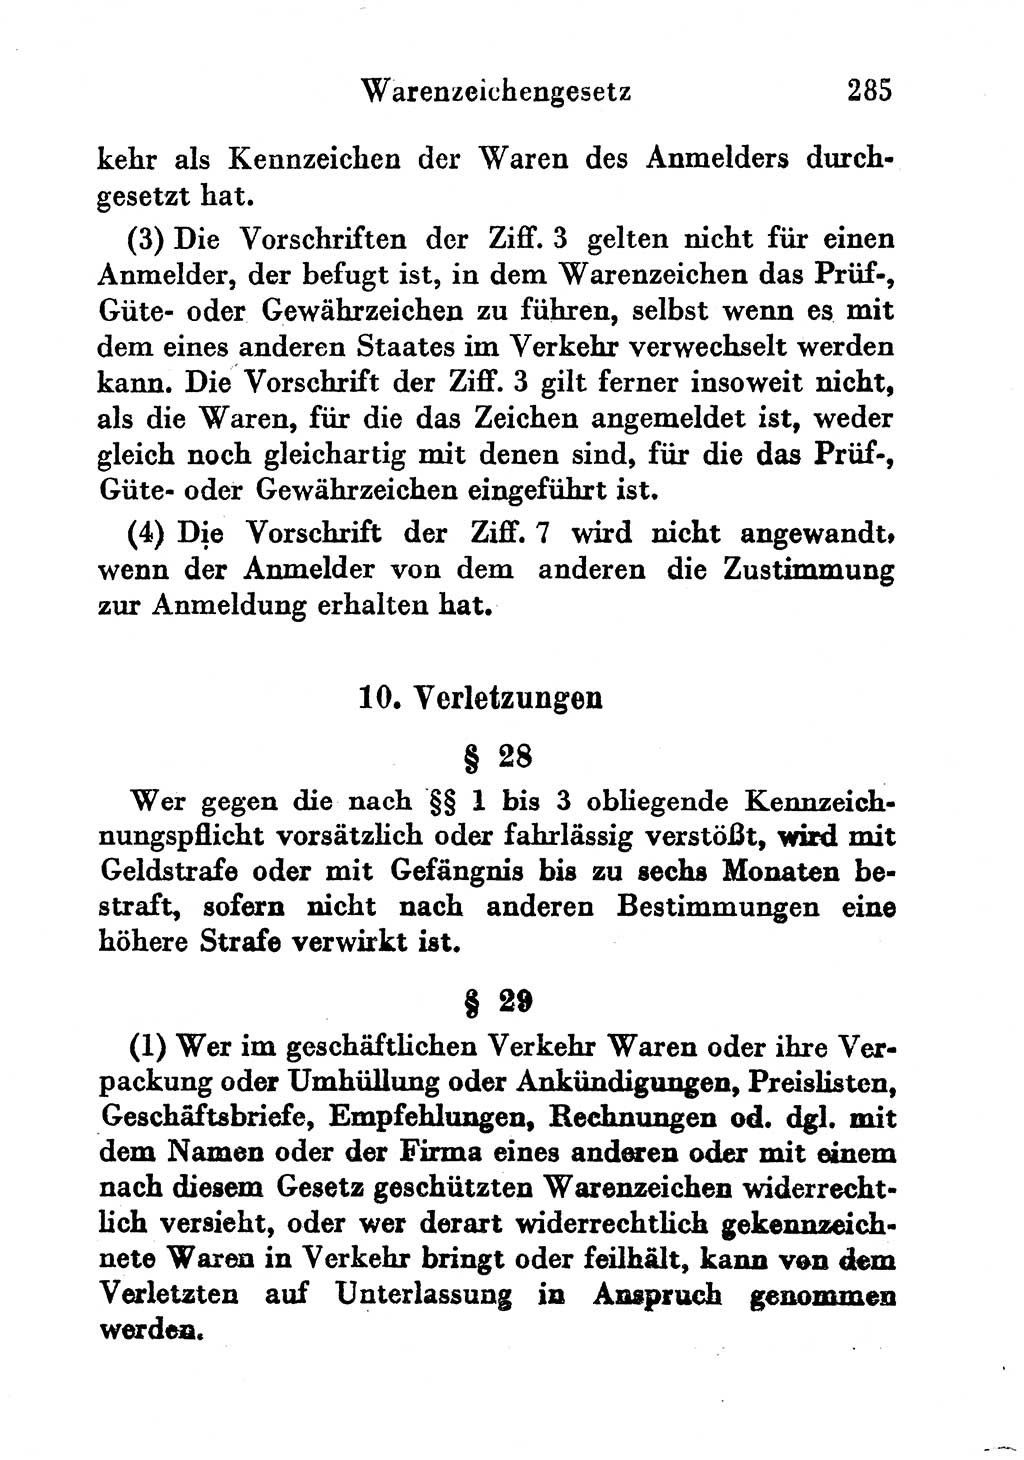 Strafgesetzbuch (StGB) und andere Strafgesetze [Deutsche Demokratische Republik (DDR)] 1956, Seite 285 (StGB Strafges. DDR 1956, S. 285)